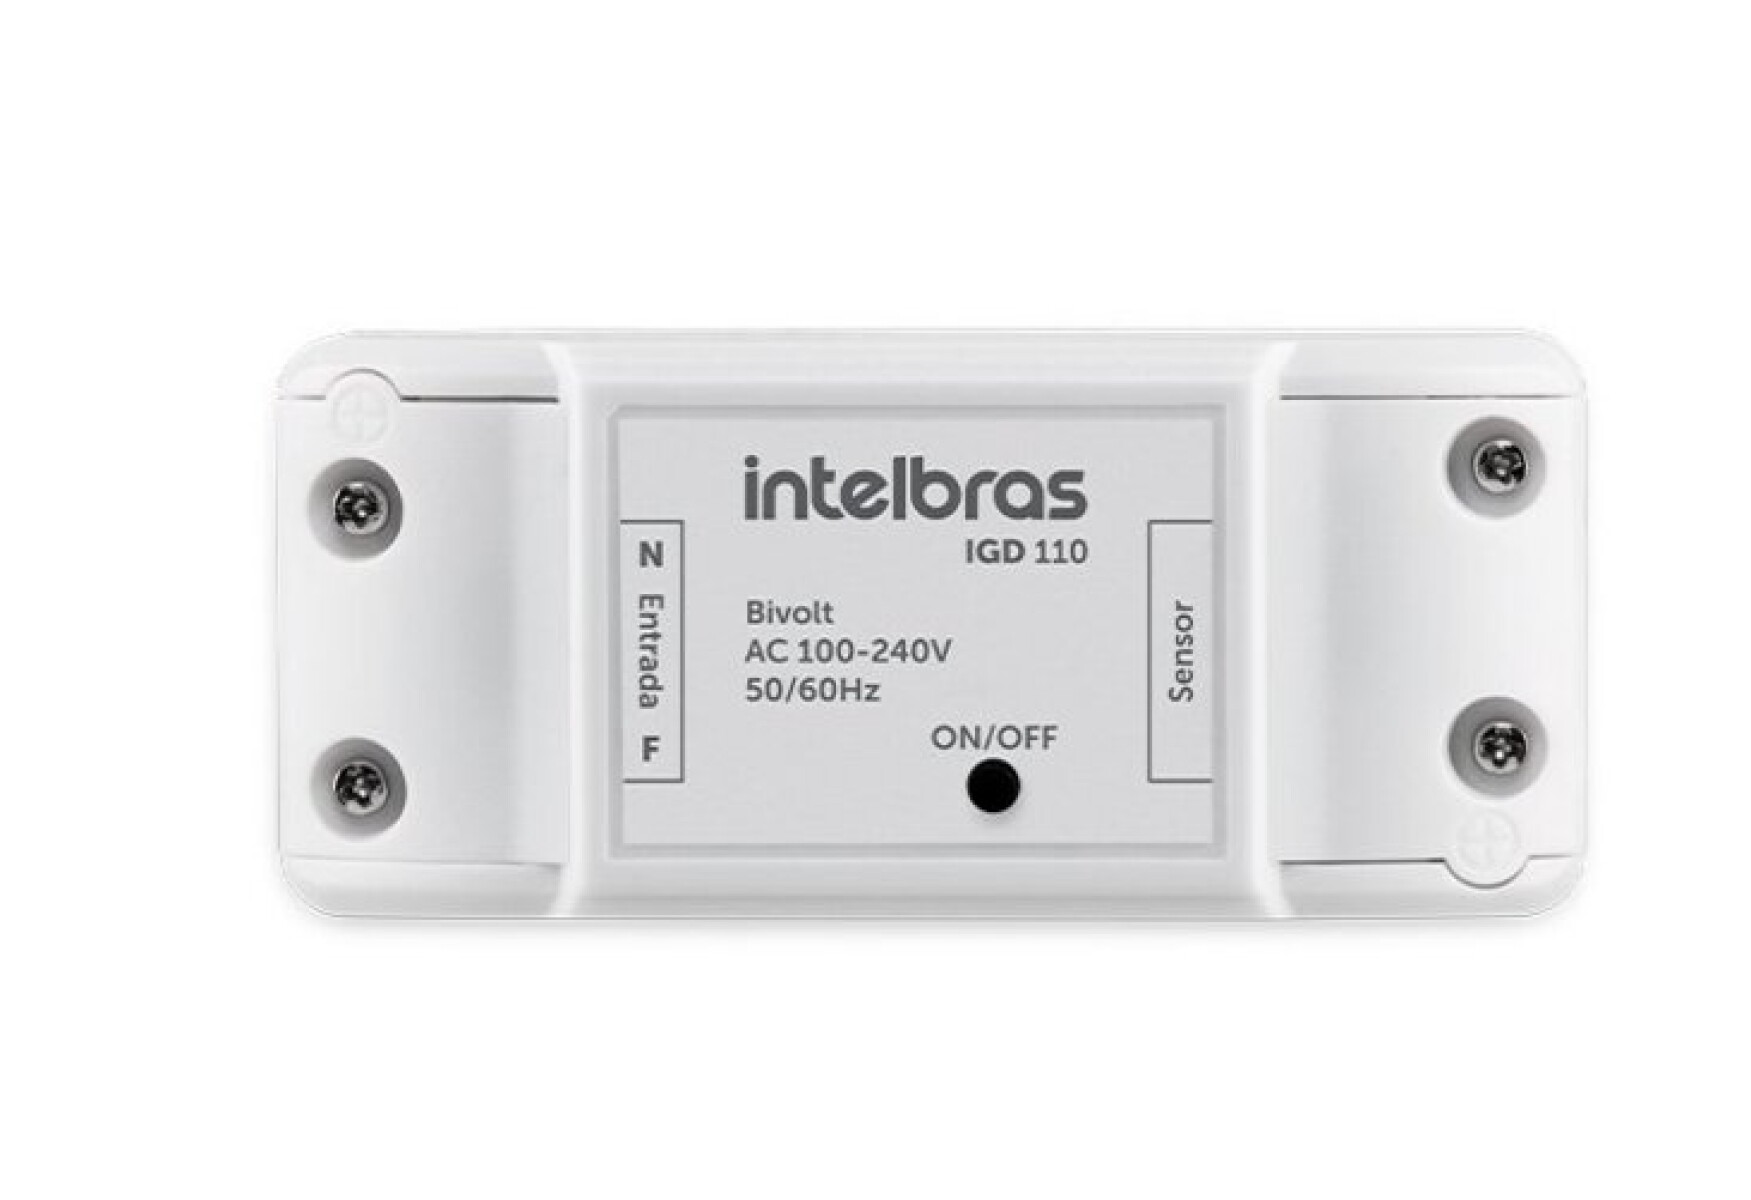 Smart Home ACCIONADOR WiFi para Portones IGD 110 Intelbras - Smart Home Accionador Wifi Para Portones Igd 110 Intelbras 